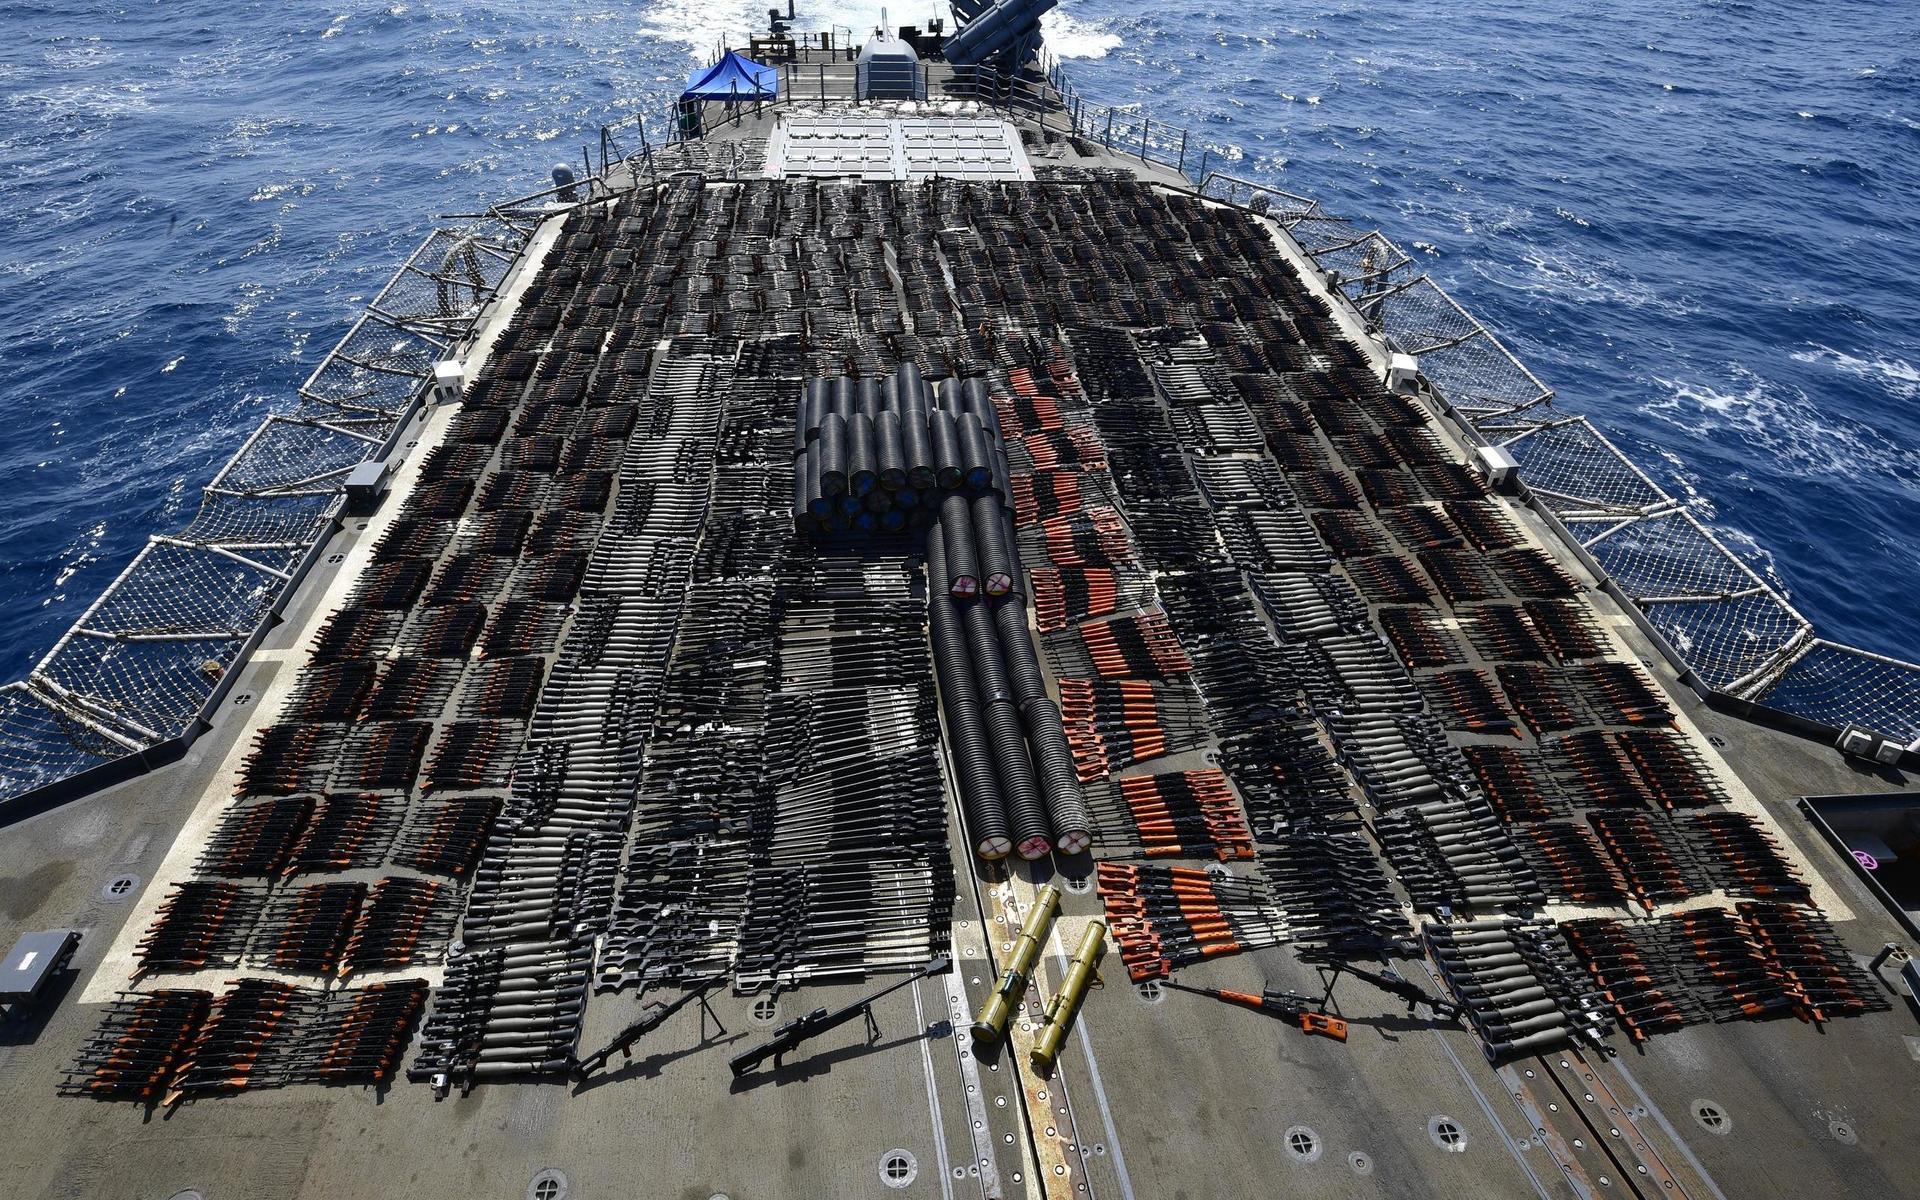 Ett team bestående av personal från amerikanska flottan och kustbevakningen fann tusentals illegala vapen efter att ha stoppat ett mindre skepp i Arabiska havet för en rutinkontroll förra veckan.